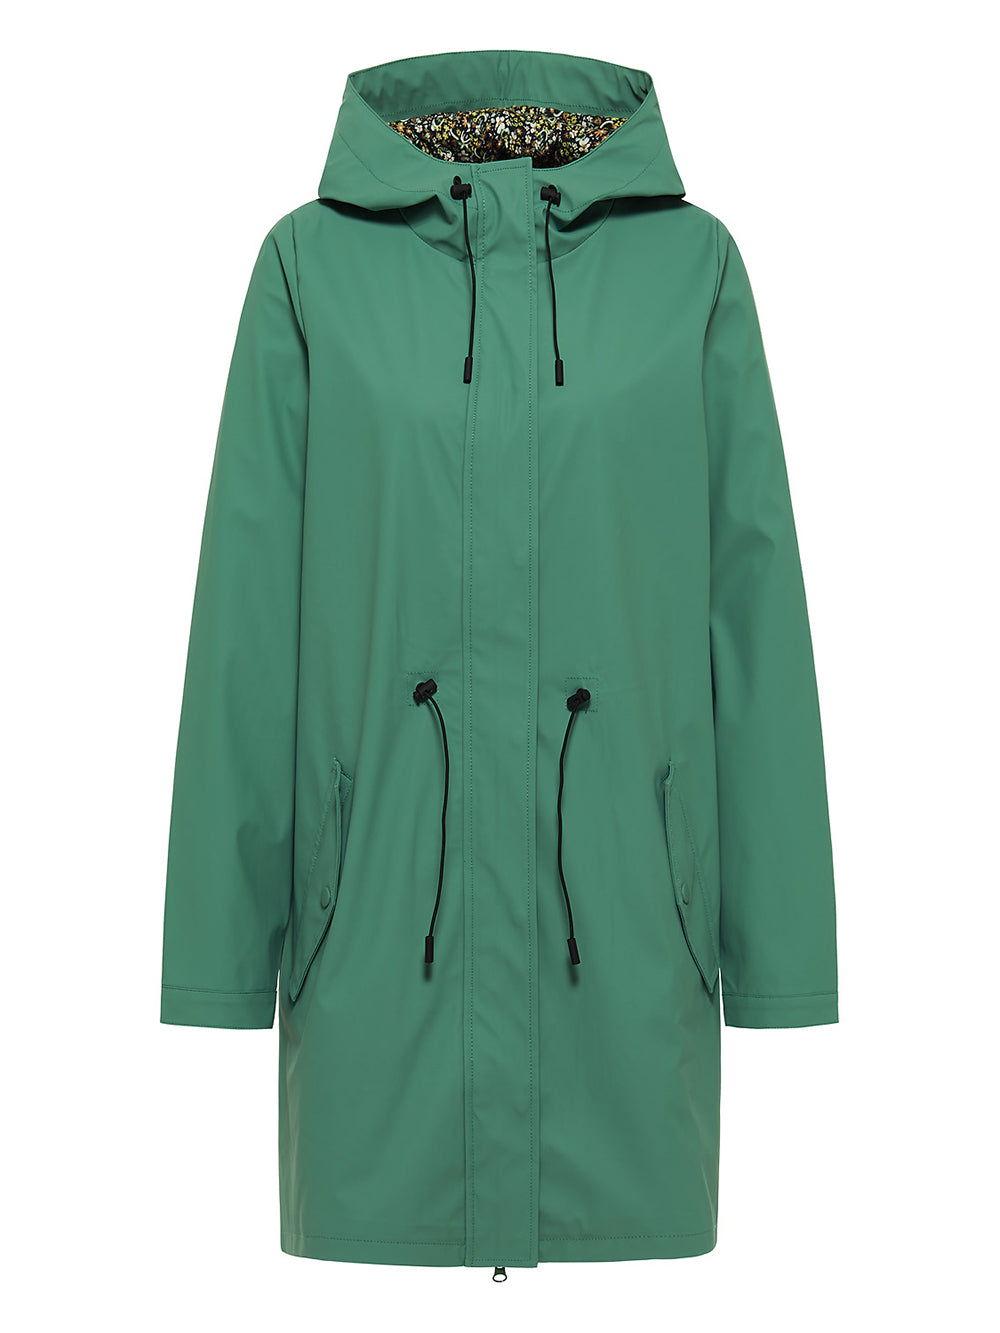 Rain jacket frosty green